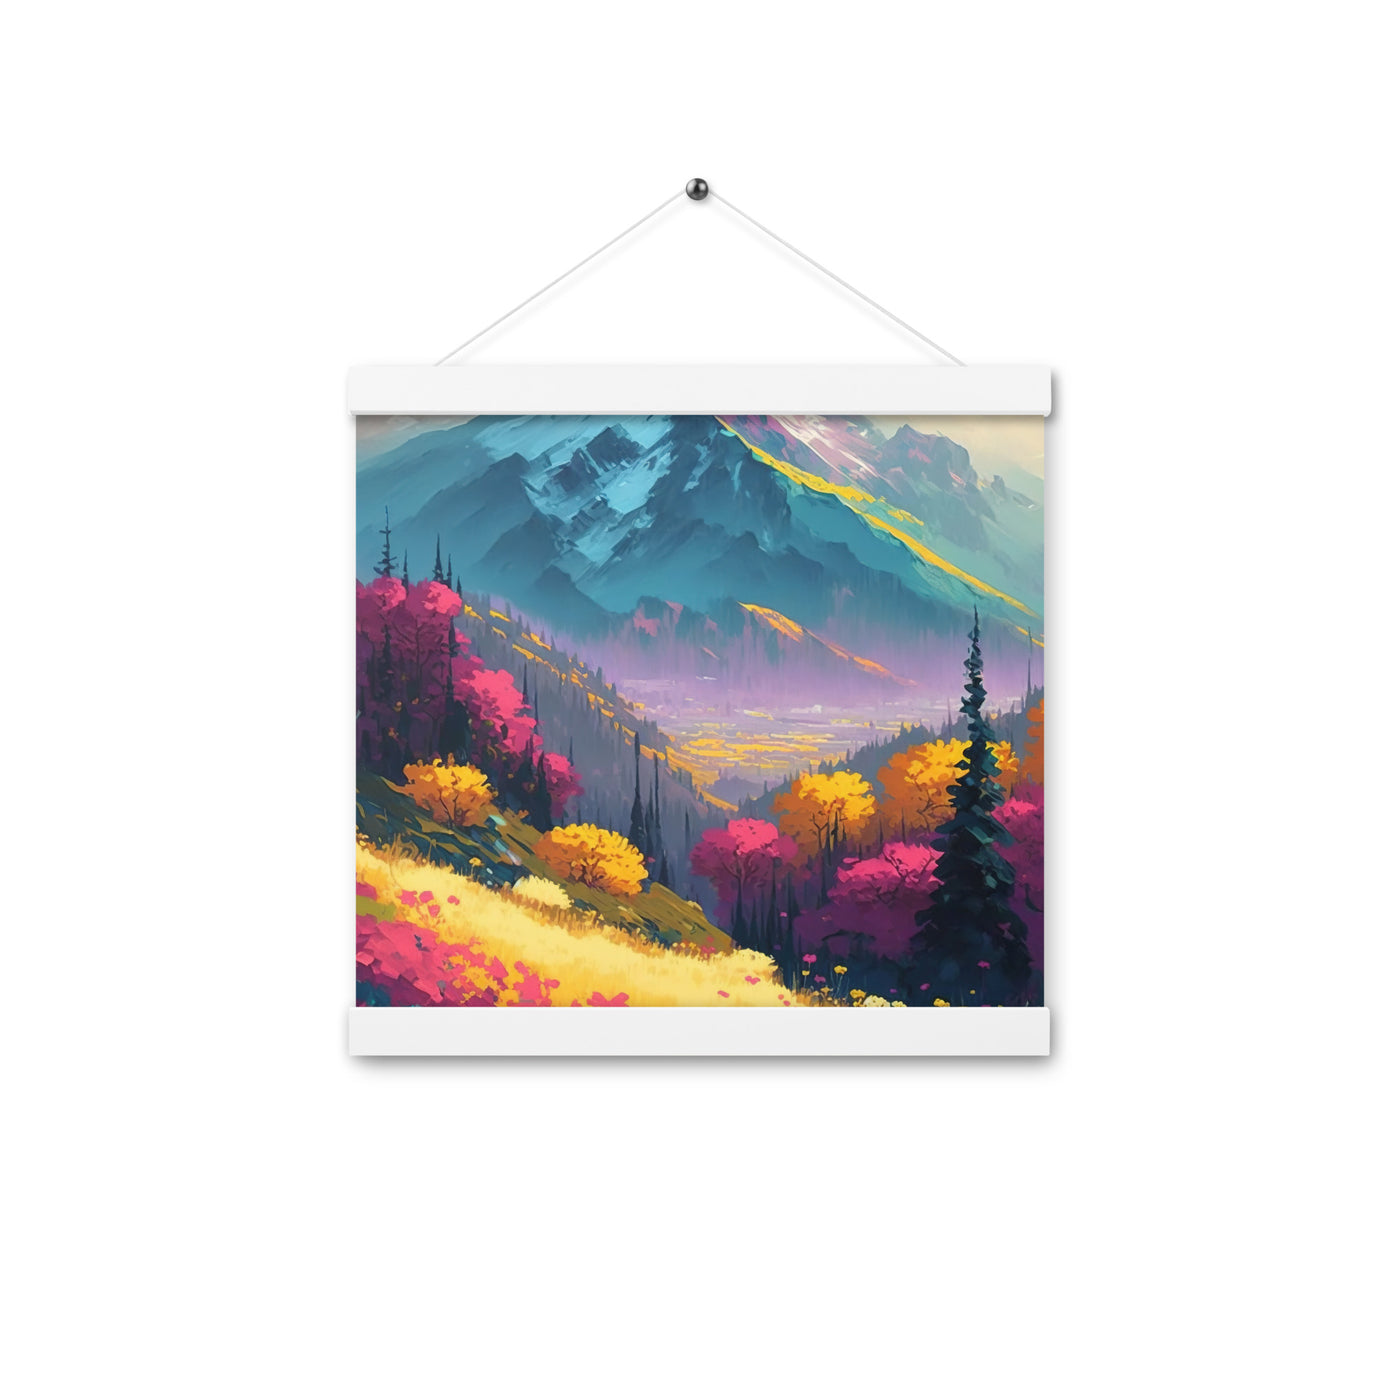 Berge, pinke und gelbe Bäume, sowie Blumen - Farbige Malerei - Premium Poster mit Aufhängung berge xxx 30.5 x 30.5 cm